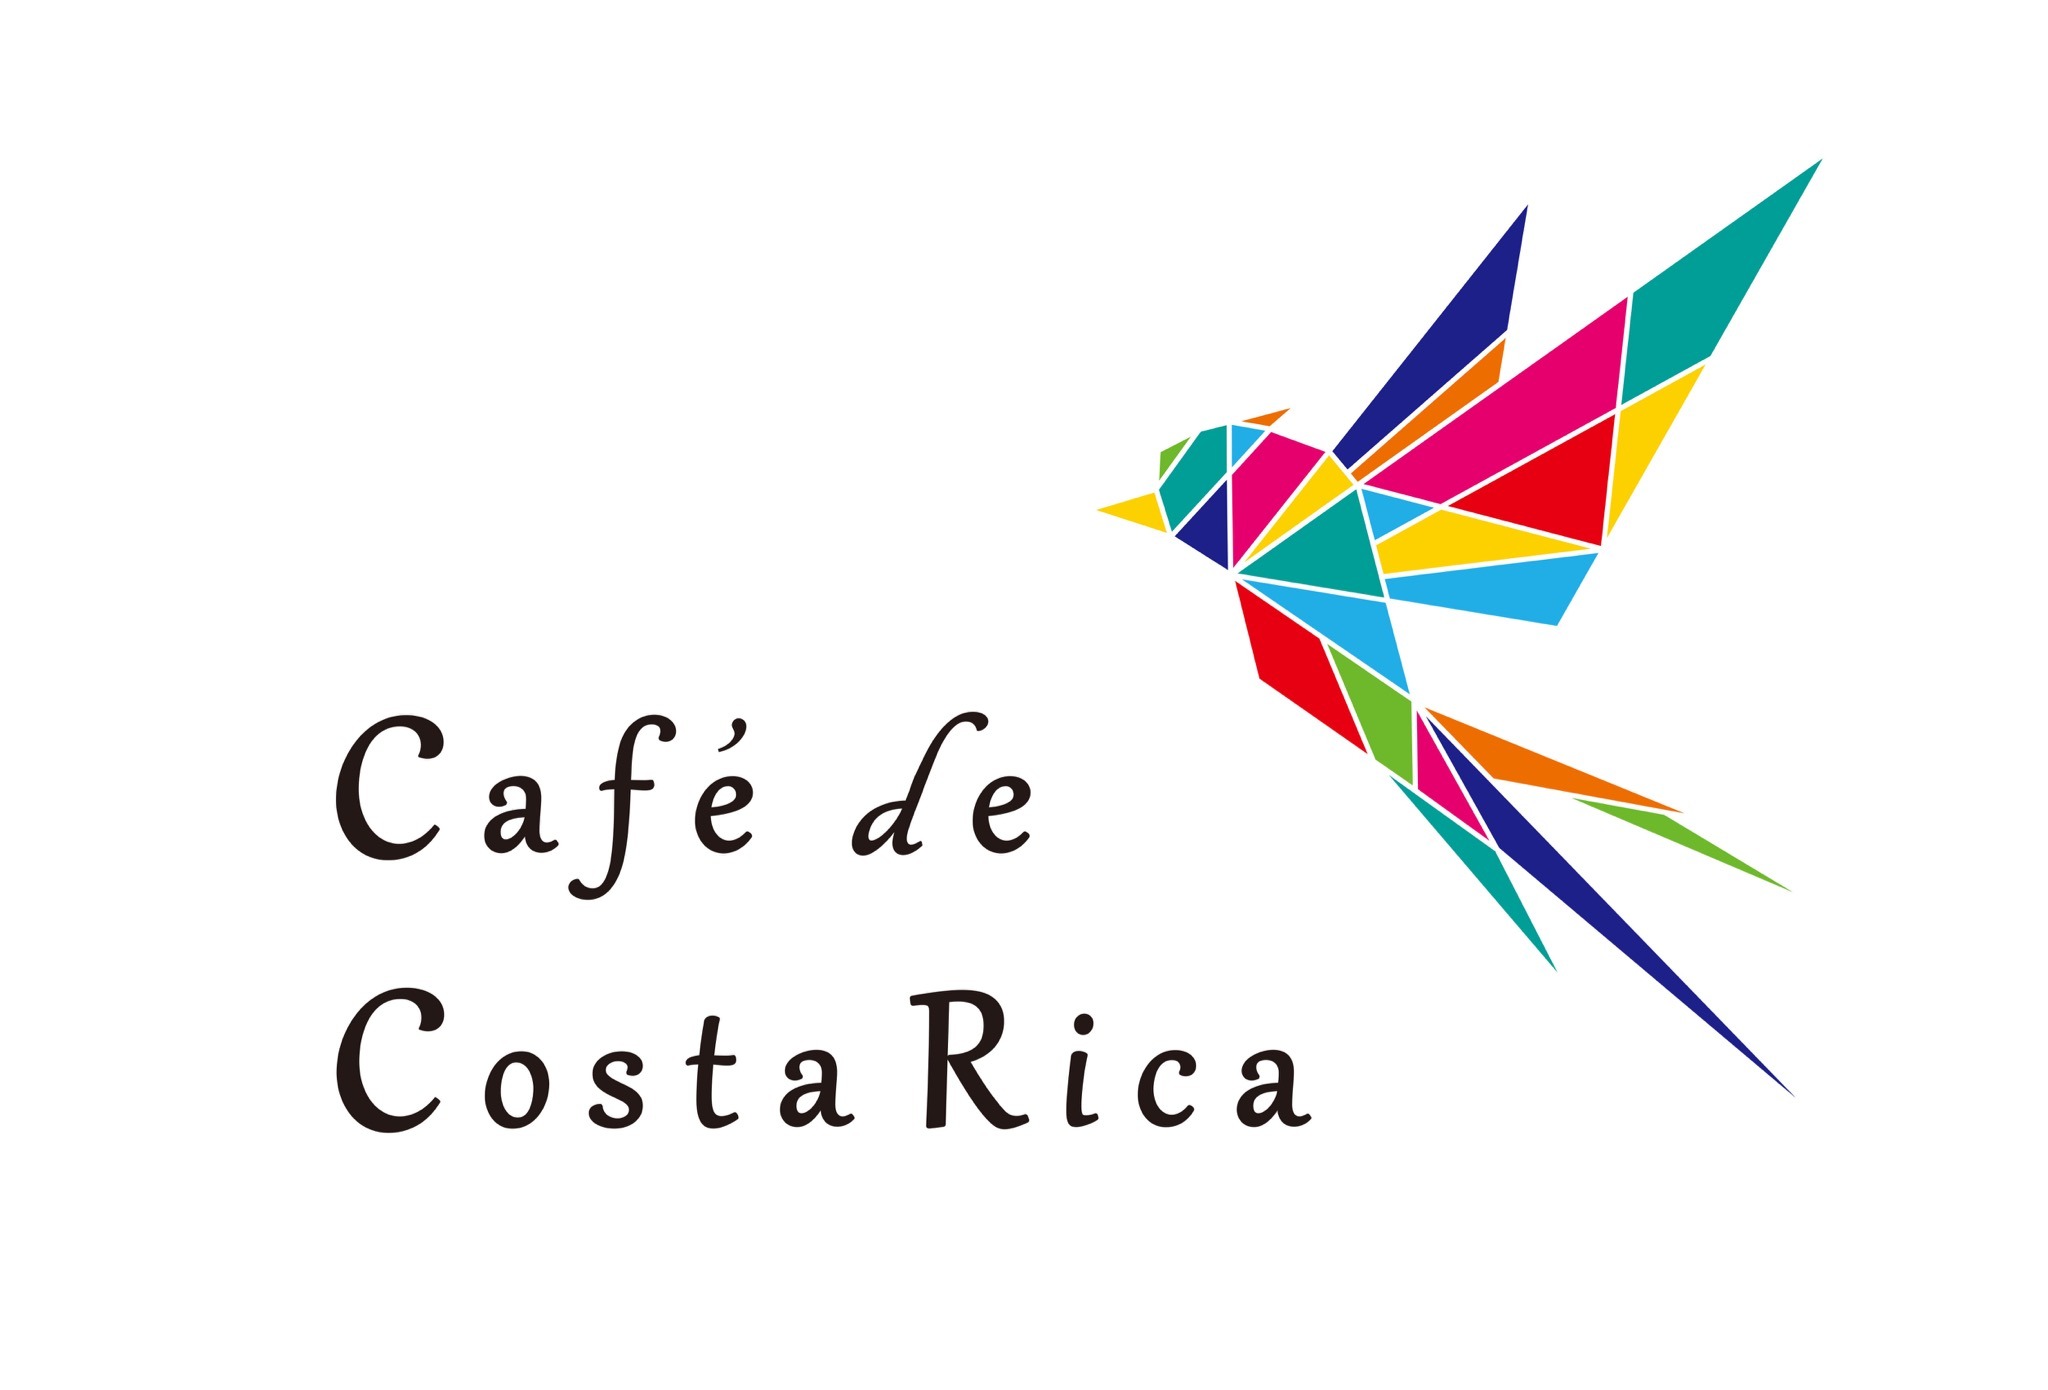 Café de Costa Rica カフェデコスタリカ